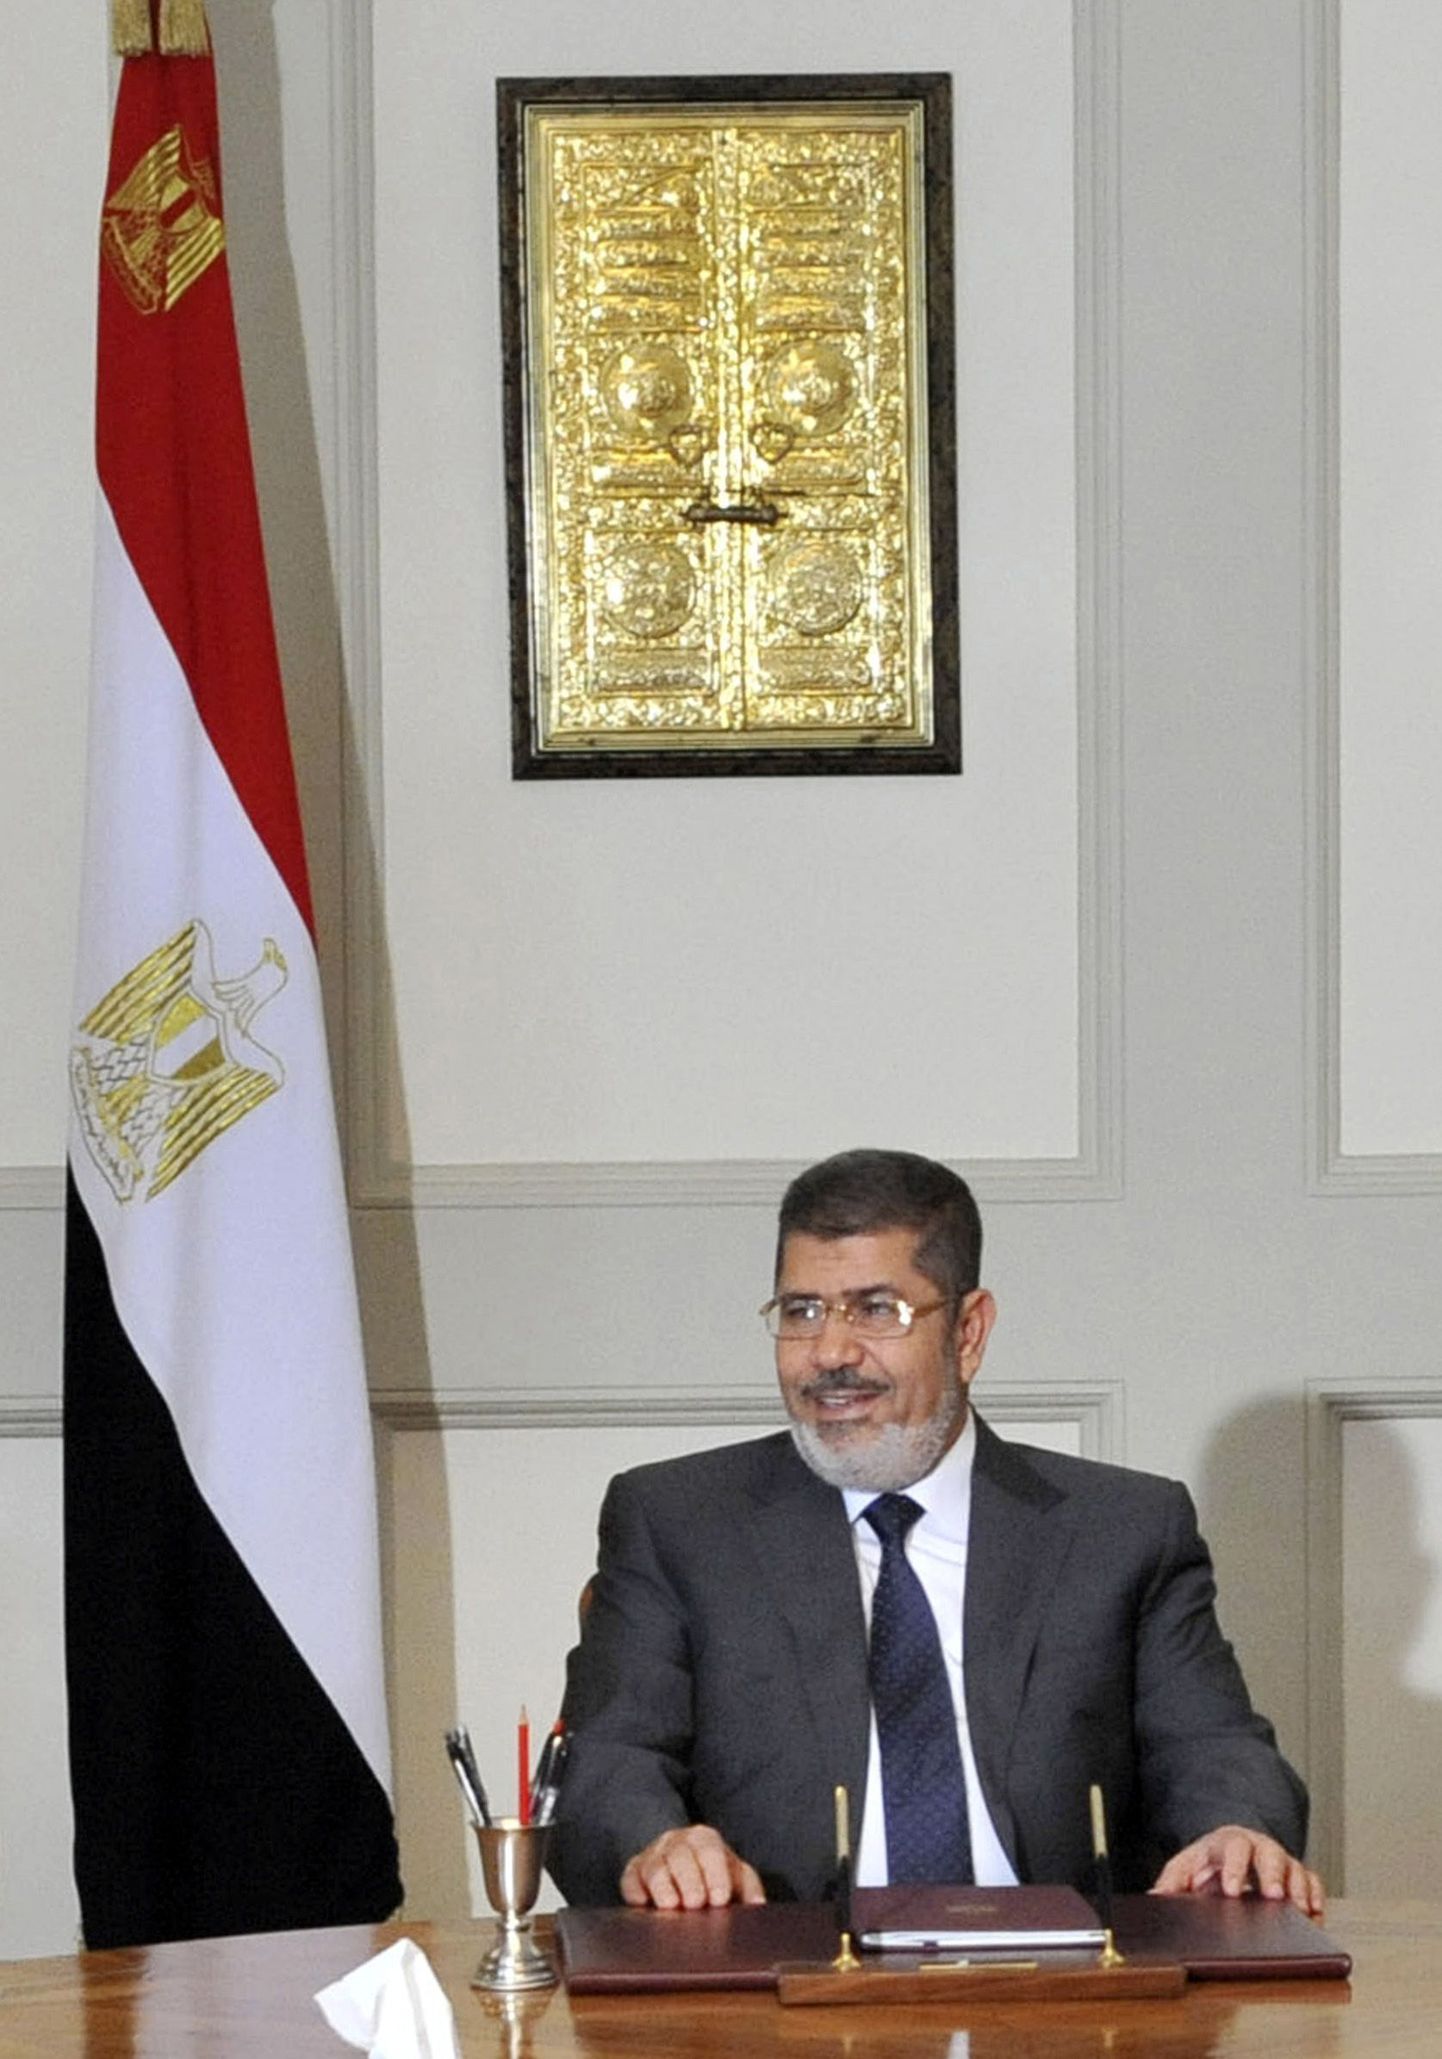 Мурси с прививкой демократии своей стране не справился.